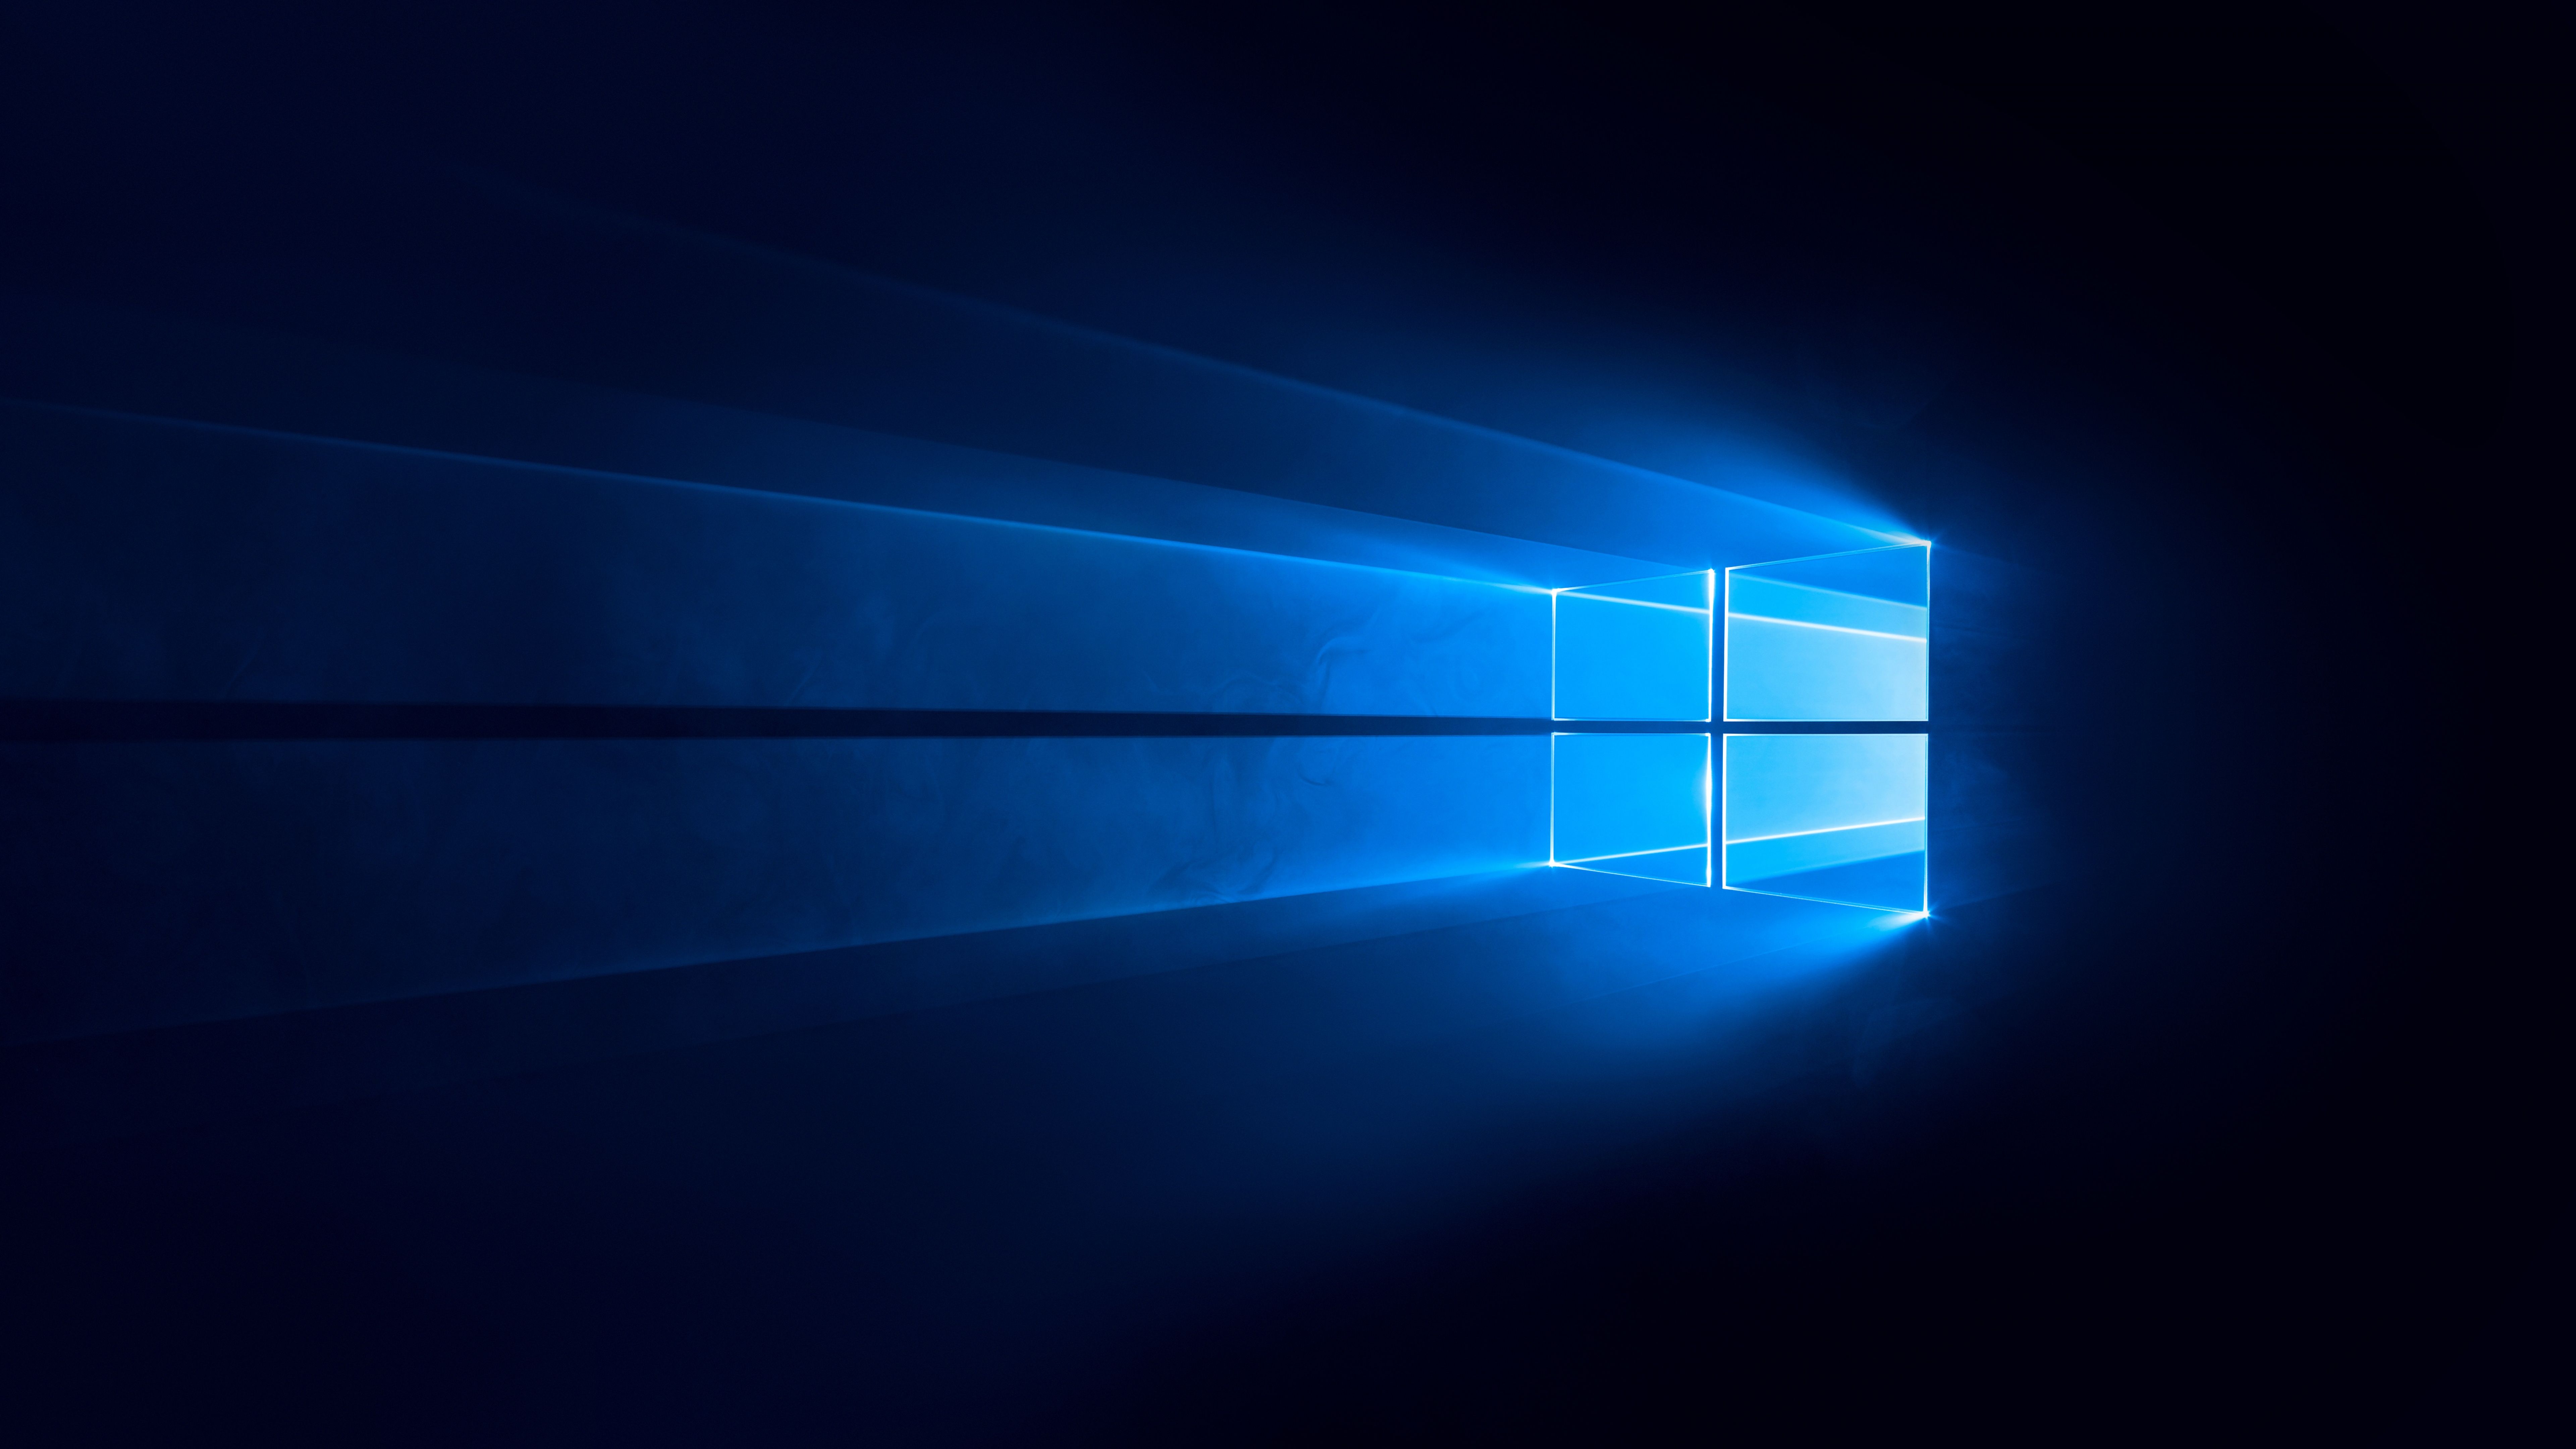  Coole PC 4k Hintergrundbild 7680x4320. Windows 10 Wallpaper 4K, Dark, Blue background, Technology